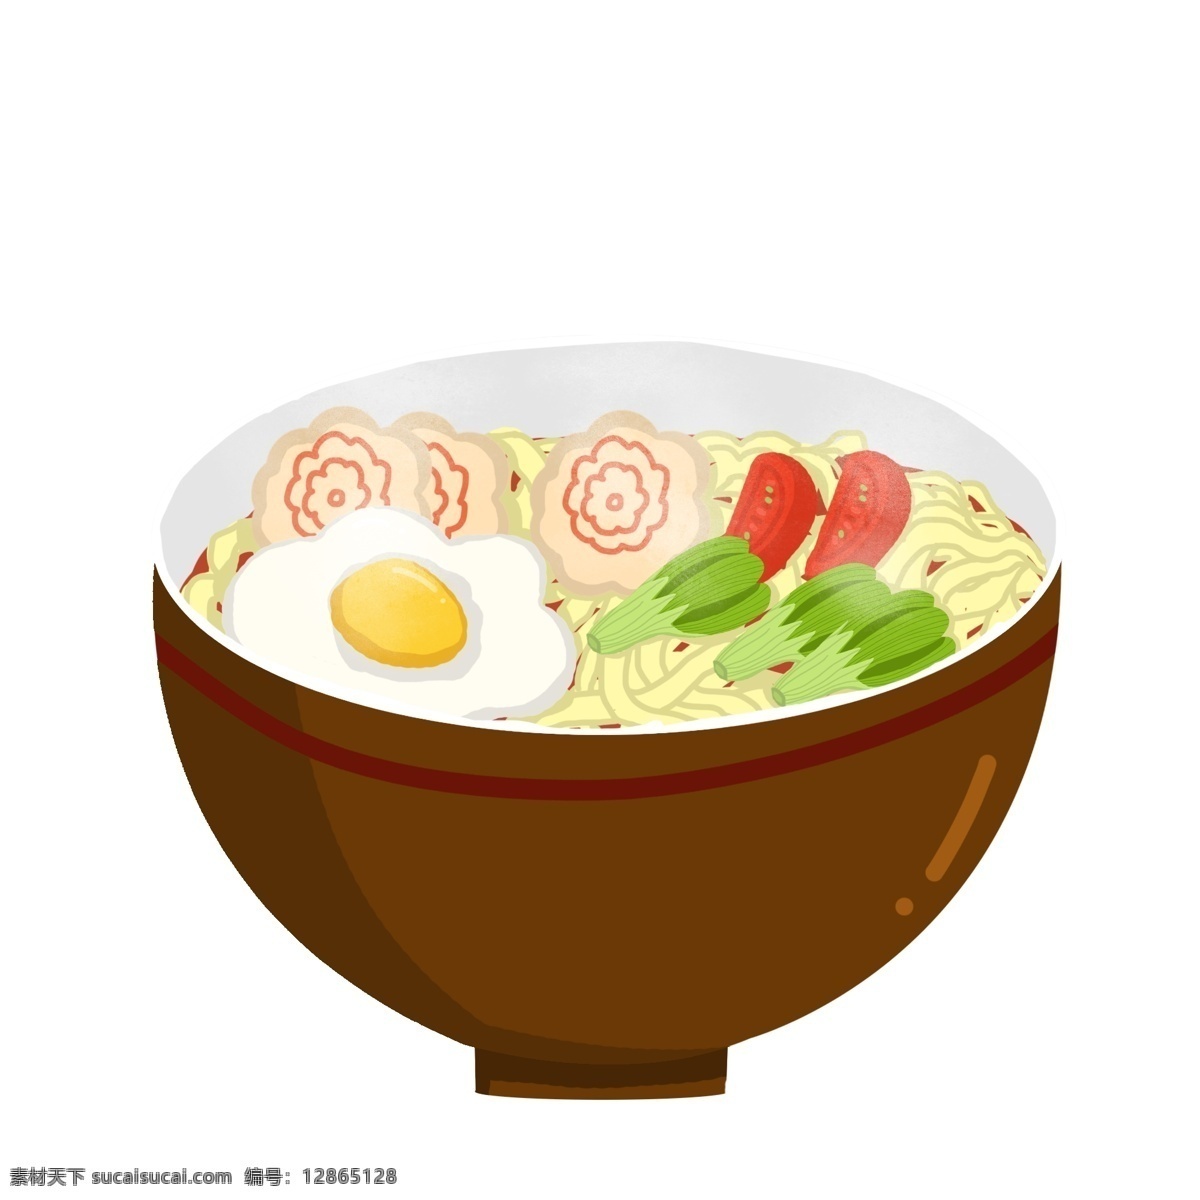 卡通 食物 手绘 插画 美食 手绘插画 卡通拉面 日本拉面 兰州拉面 鸡蛋 香肠 青菜 番茄 碗 美味